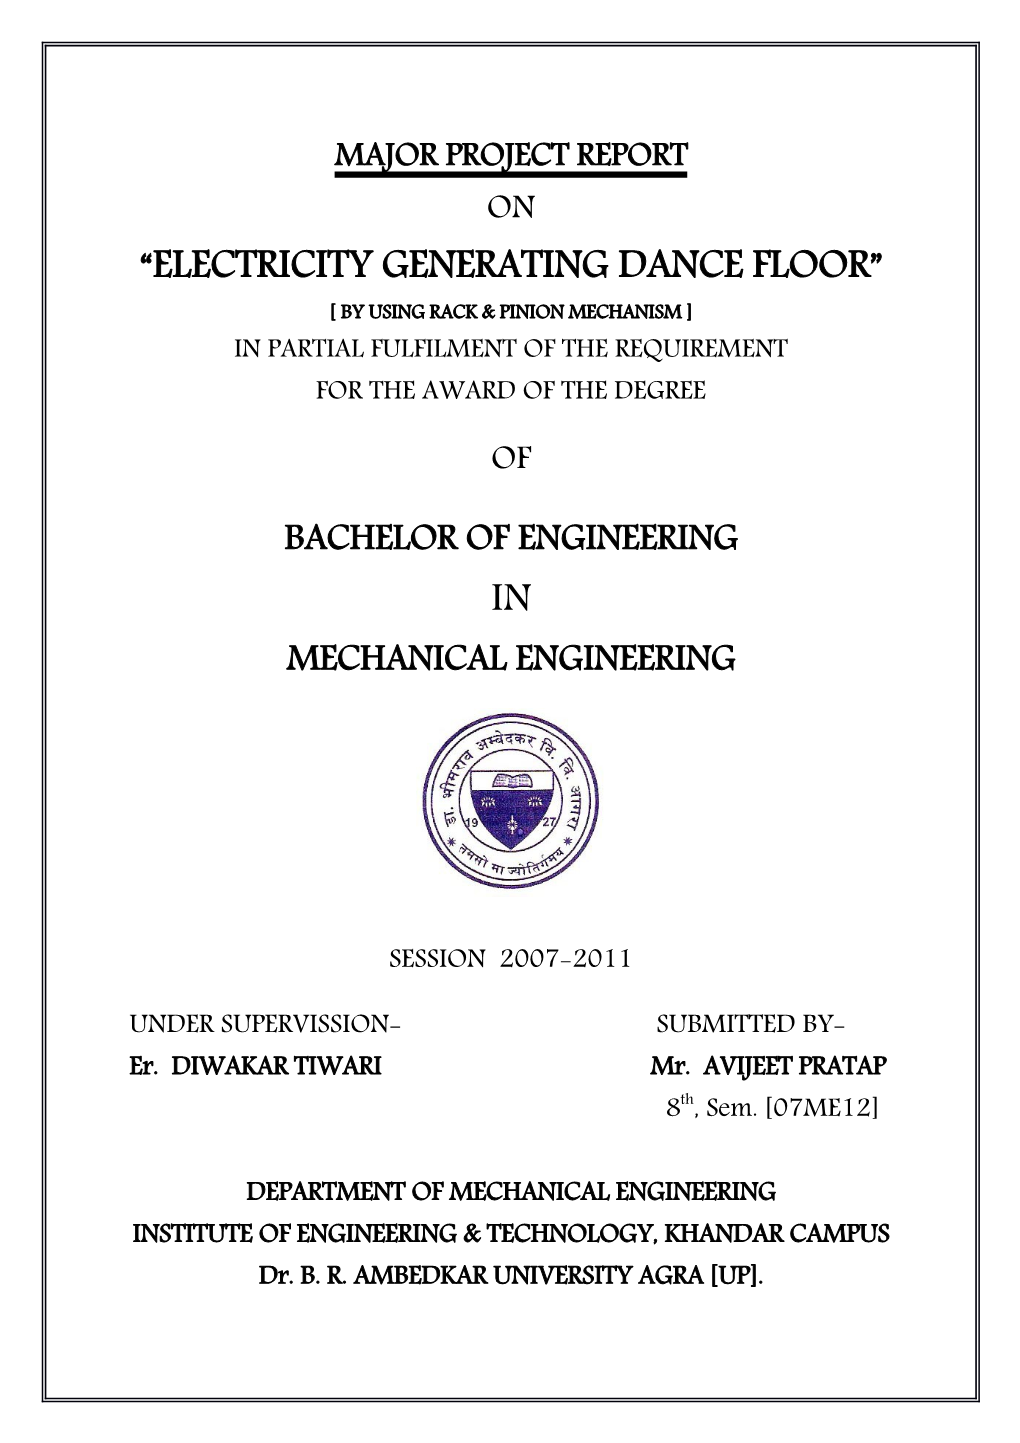 Electricity Generating Dance Floor